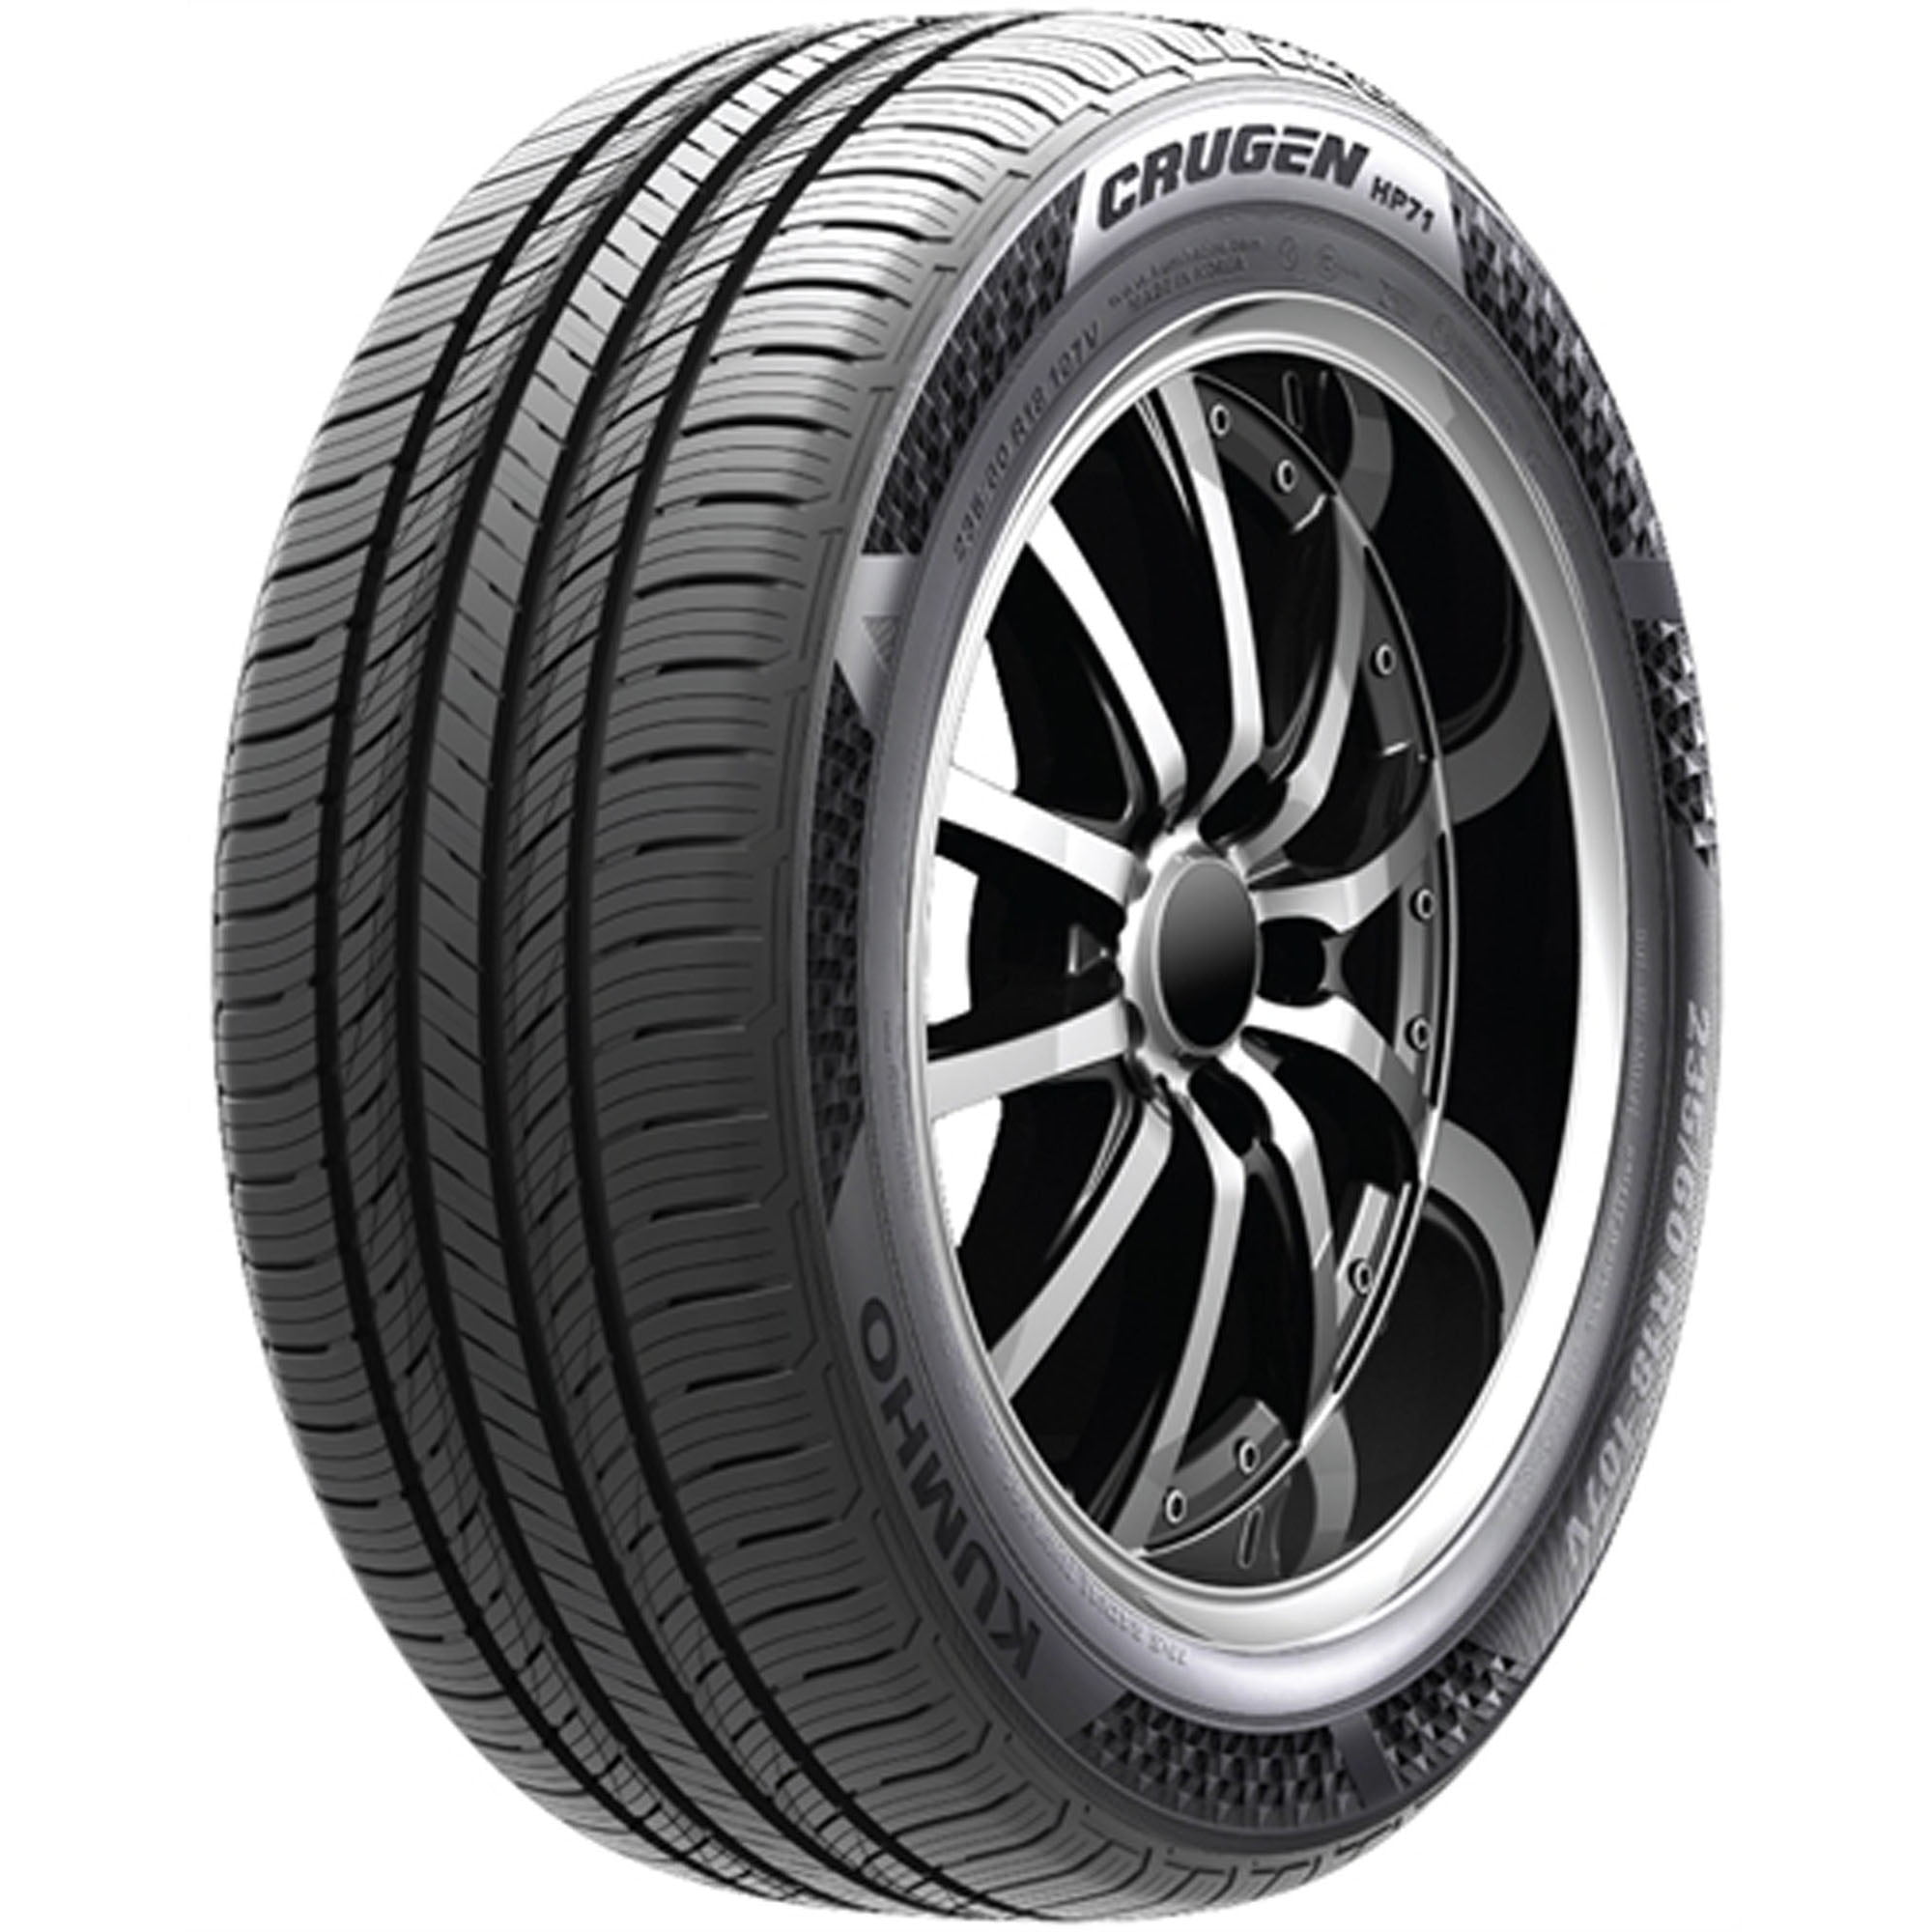 Tire HP71 Season 105V 245/60R18 All Kumho SUV/Crossover Crugen